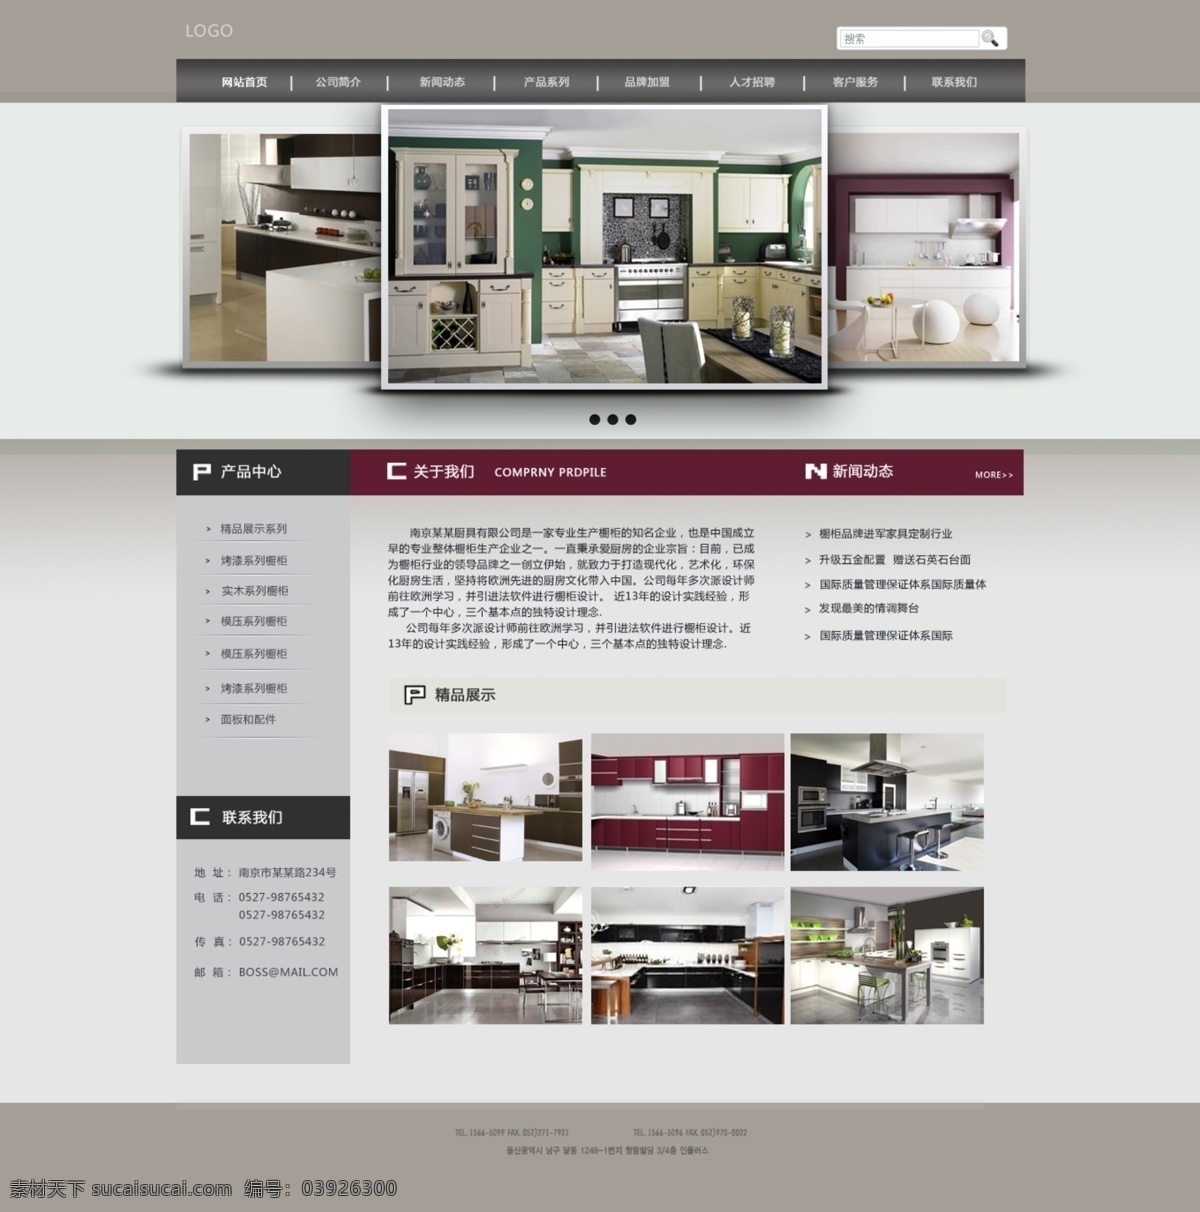 整体橱柜 企业网站 橱柜 千图网 网页设计 原创设计 原创网页设计